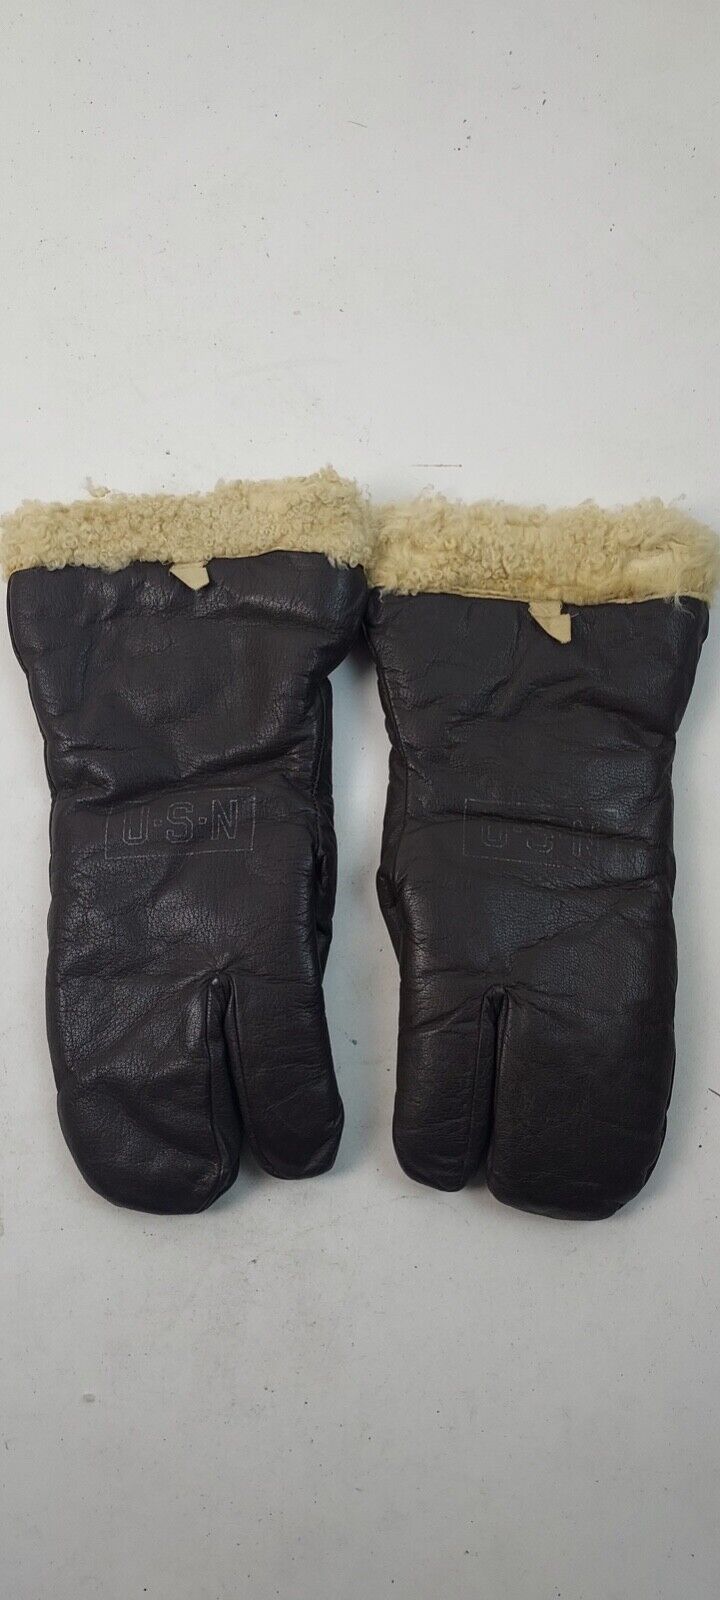 Vintage U.S.N. Leather Gloves